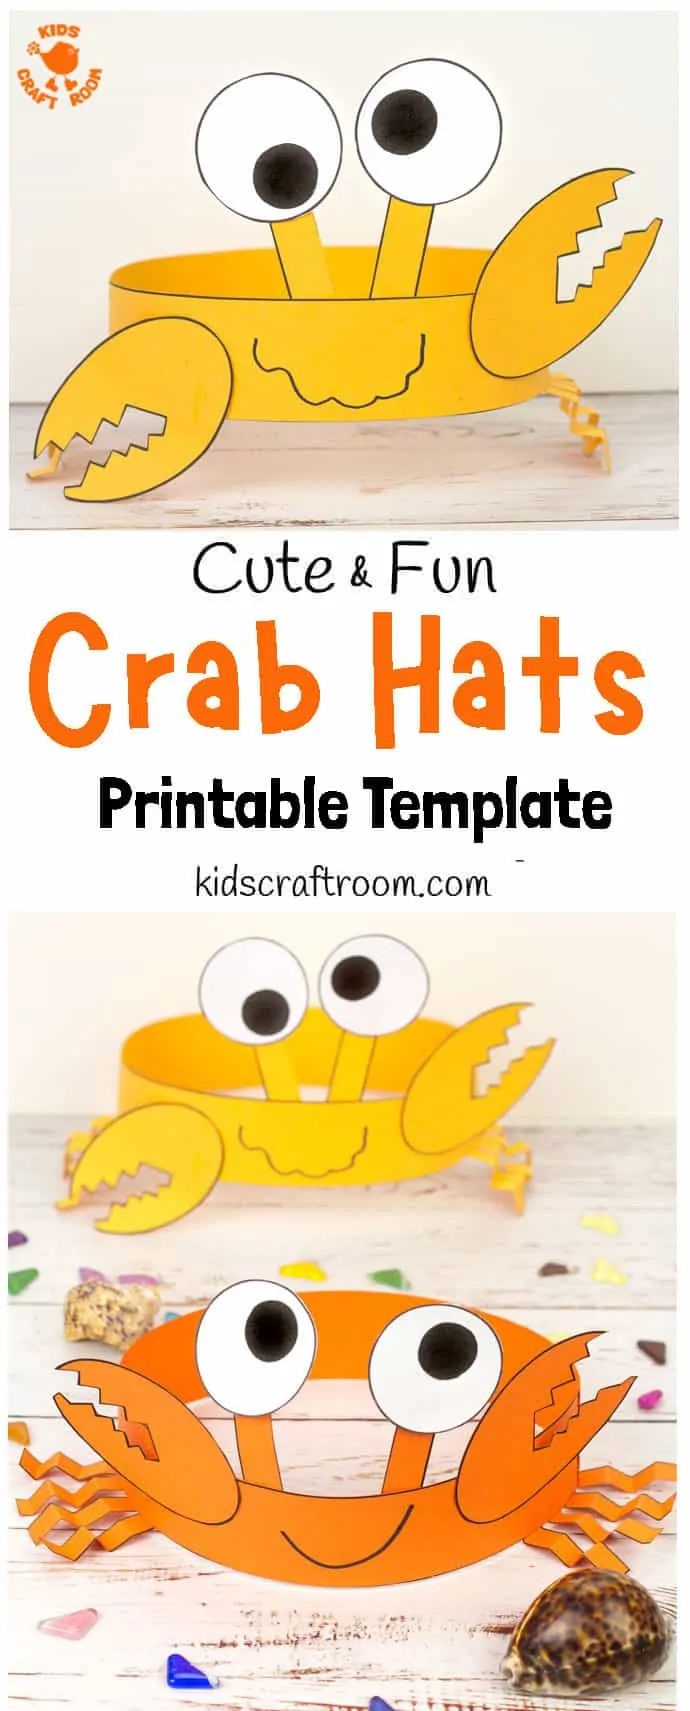 Fun Crab Hats - pin 1